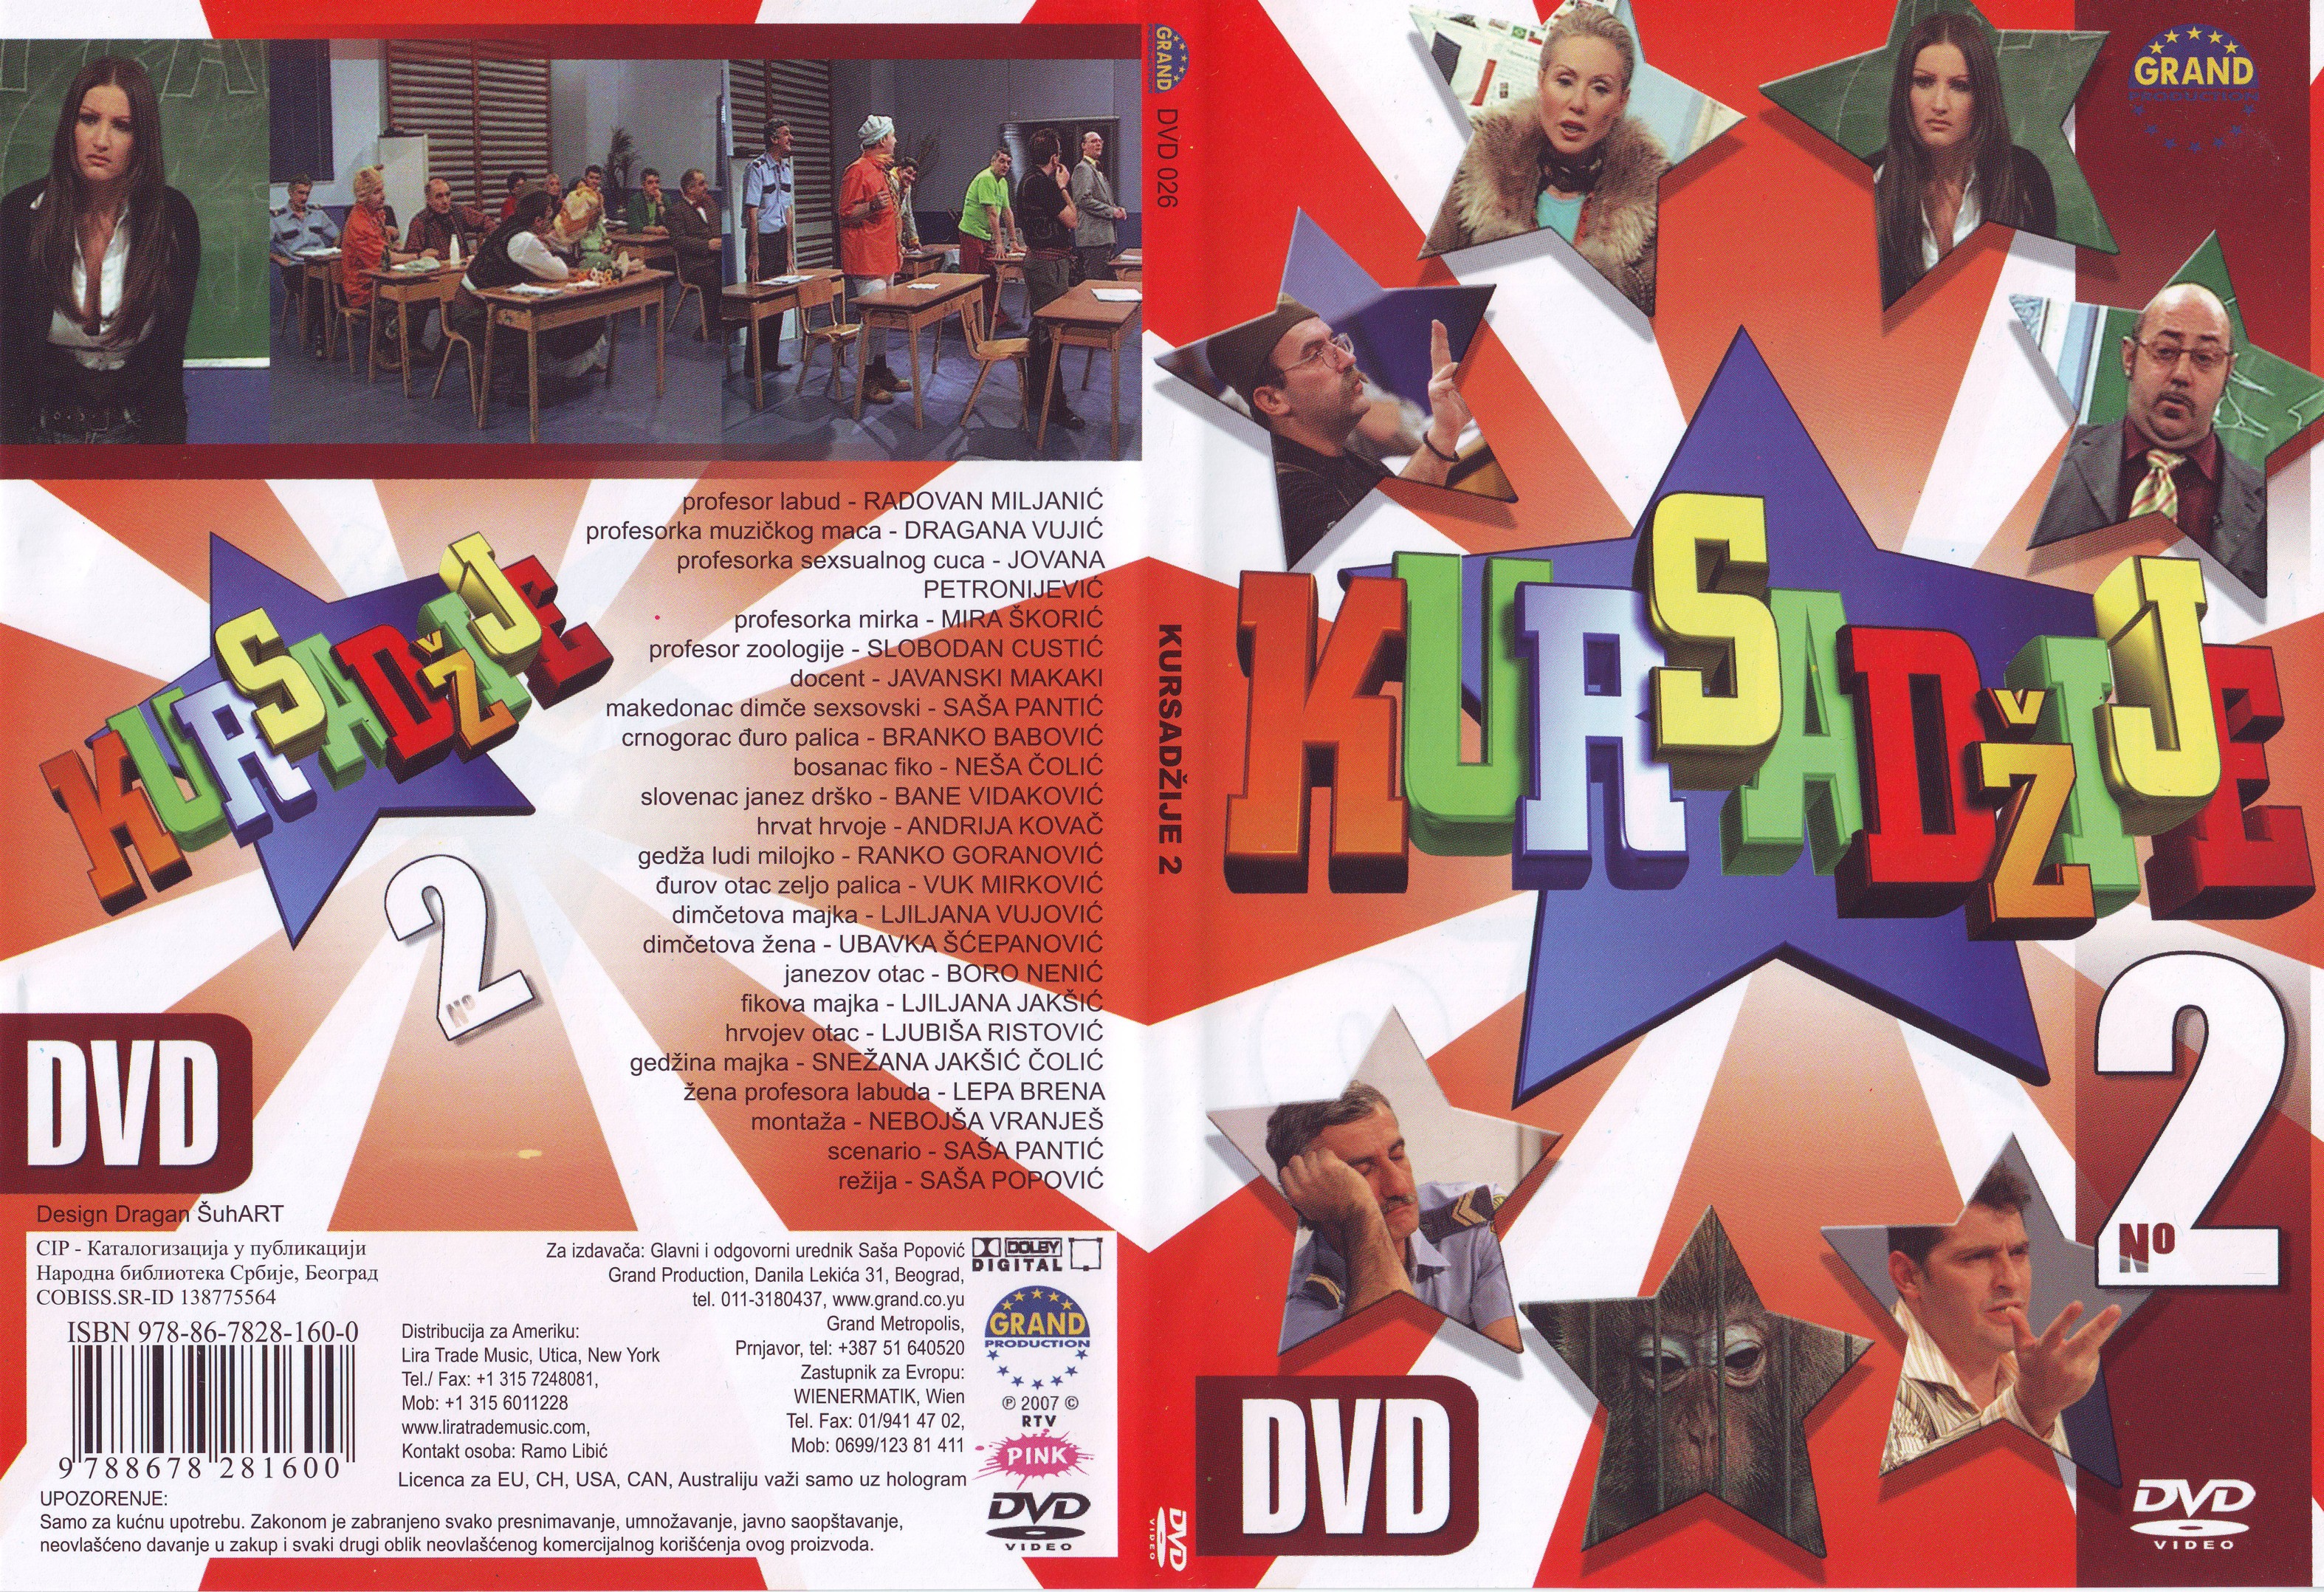 Click to view full size image -  DVD Cover - 0-9 - DVD - KURSADZIJE 2 - DVD - KURSADZIJE 2.jpg